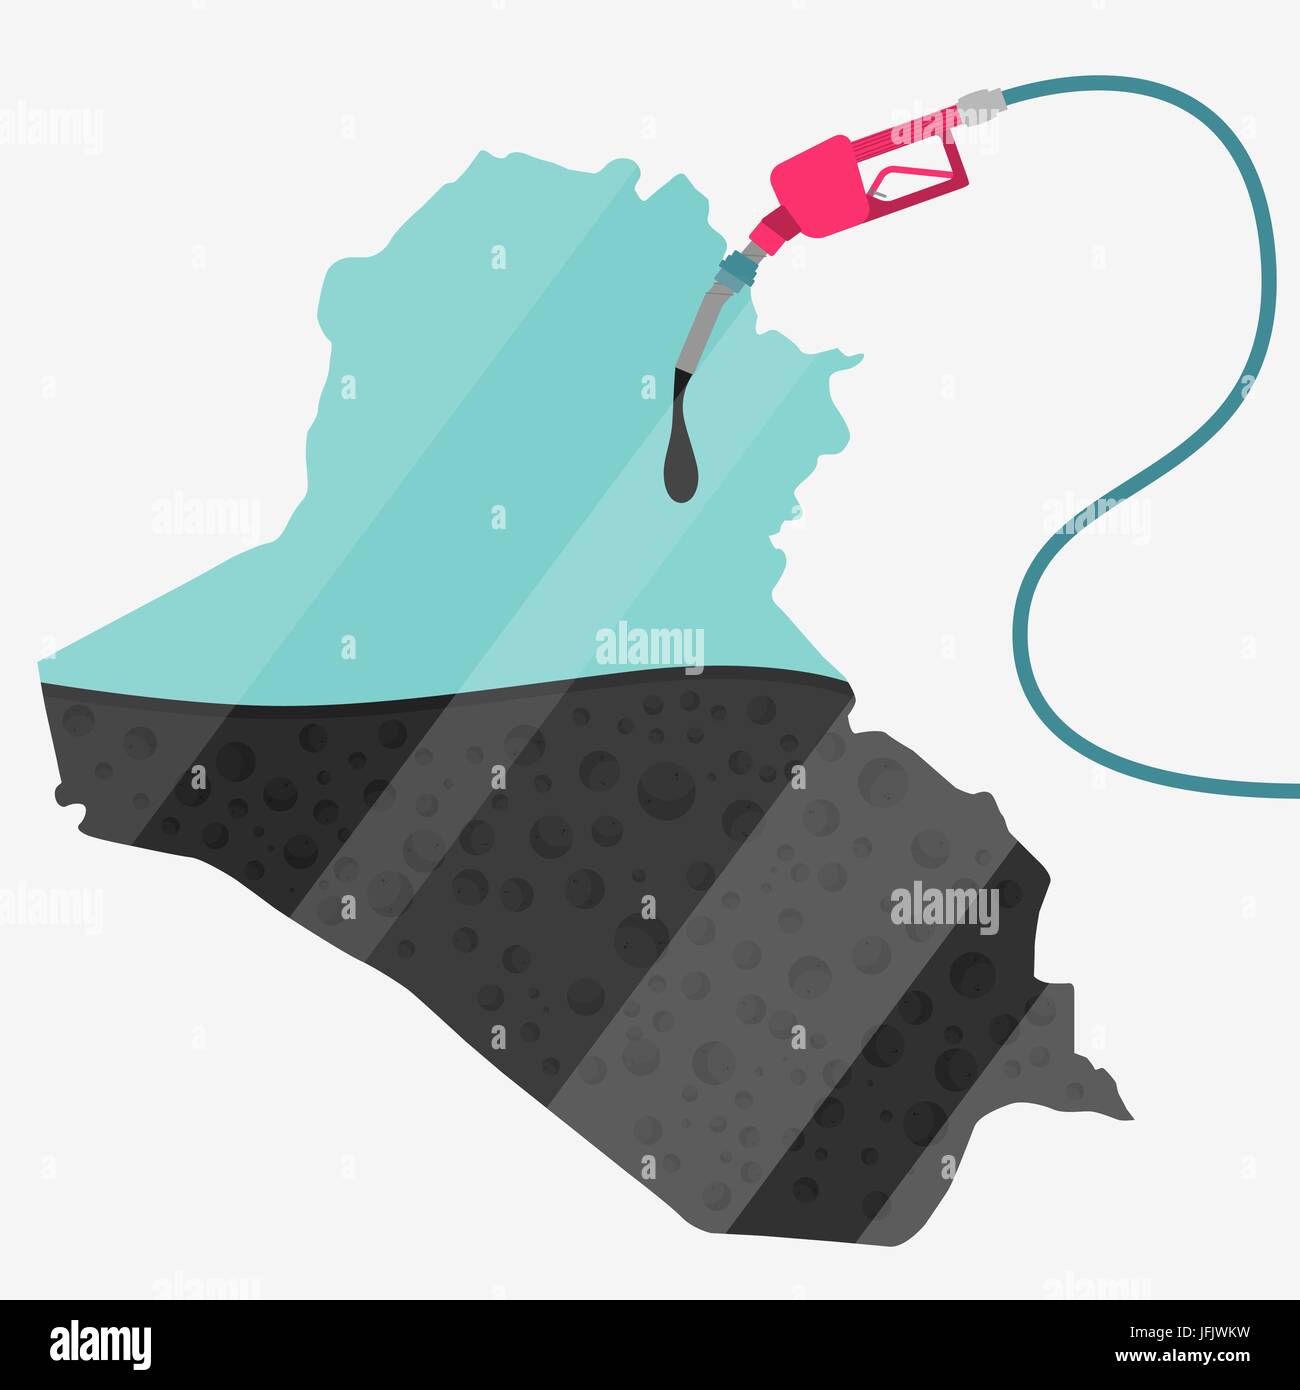 Karte des Irak durch Öl getankt werden. Gas Pumpe betriebenen Karte. Auf der Karte gibt es Glas Reflexion. Konzeptionelle. Öl produzierenden oder Importländern. Stock Vektor